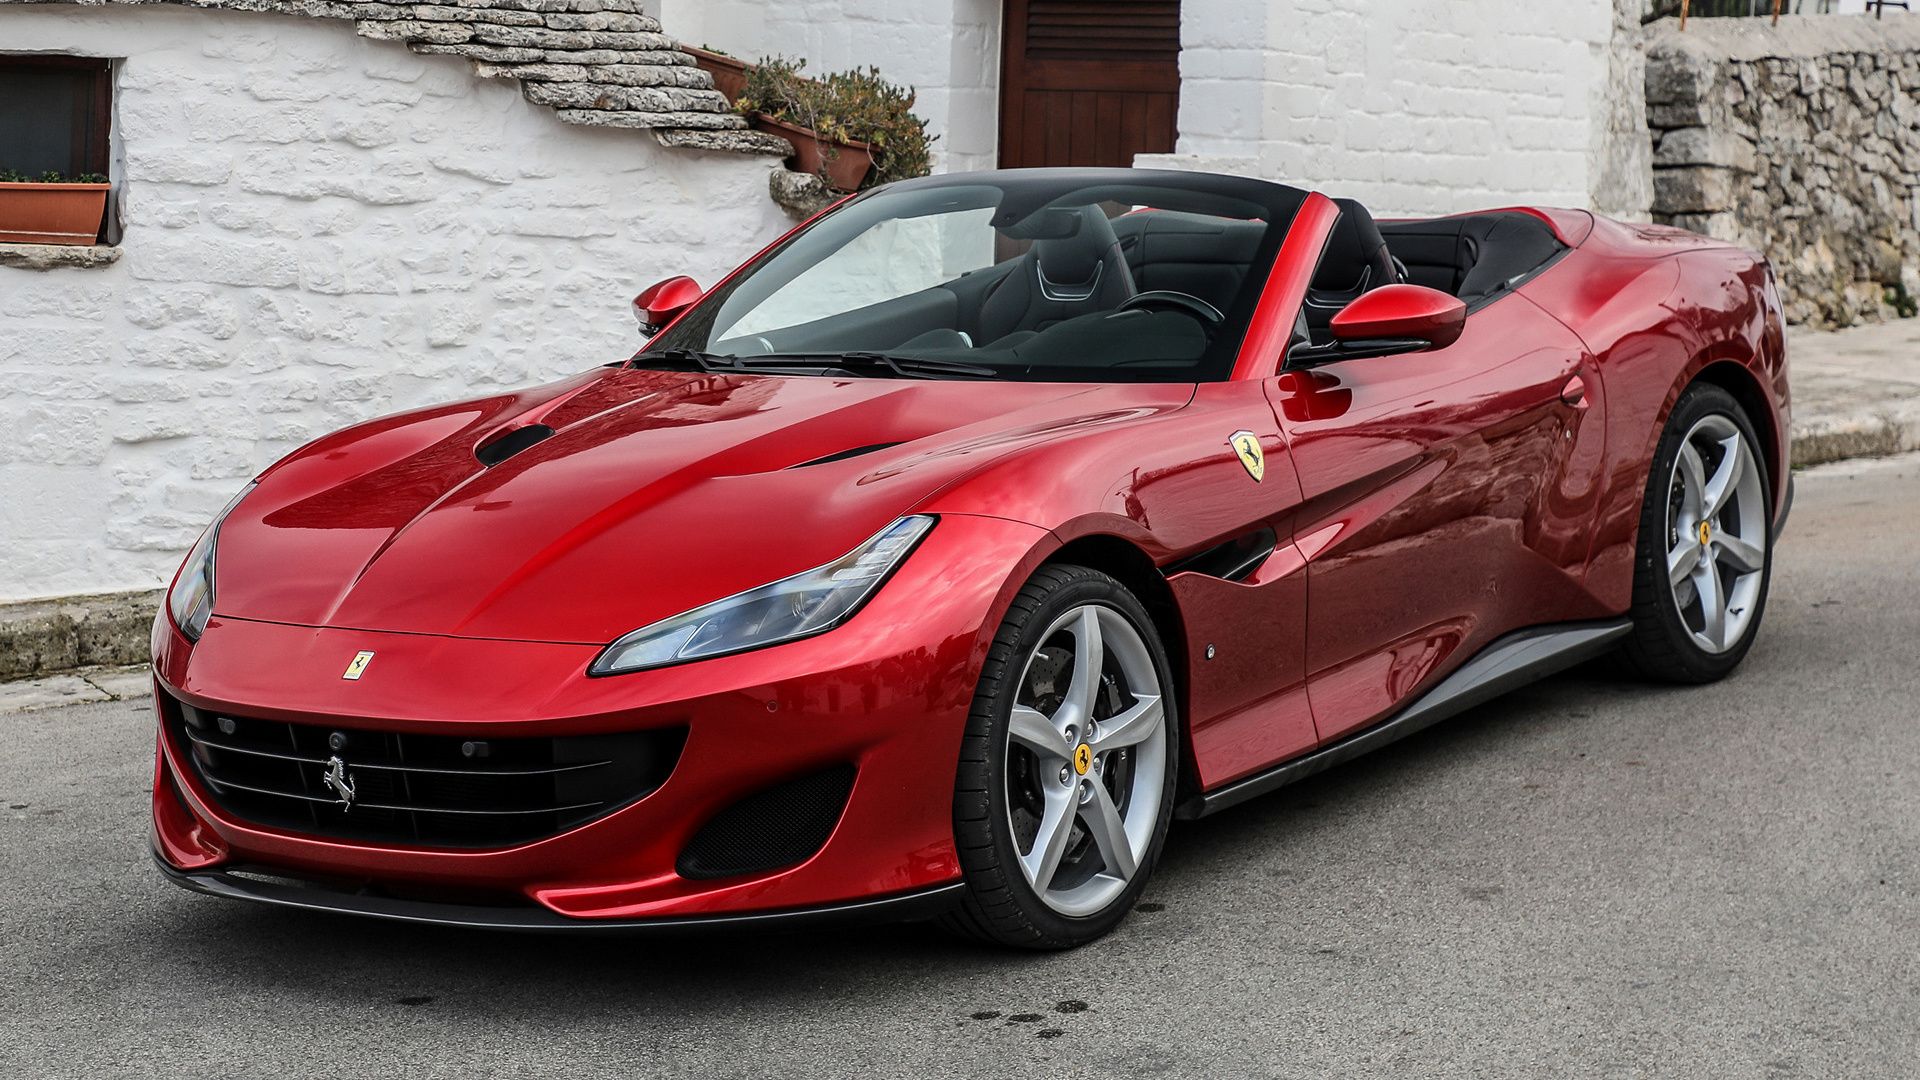 Ferrari Portofino and HD Image